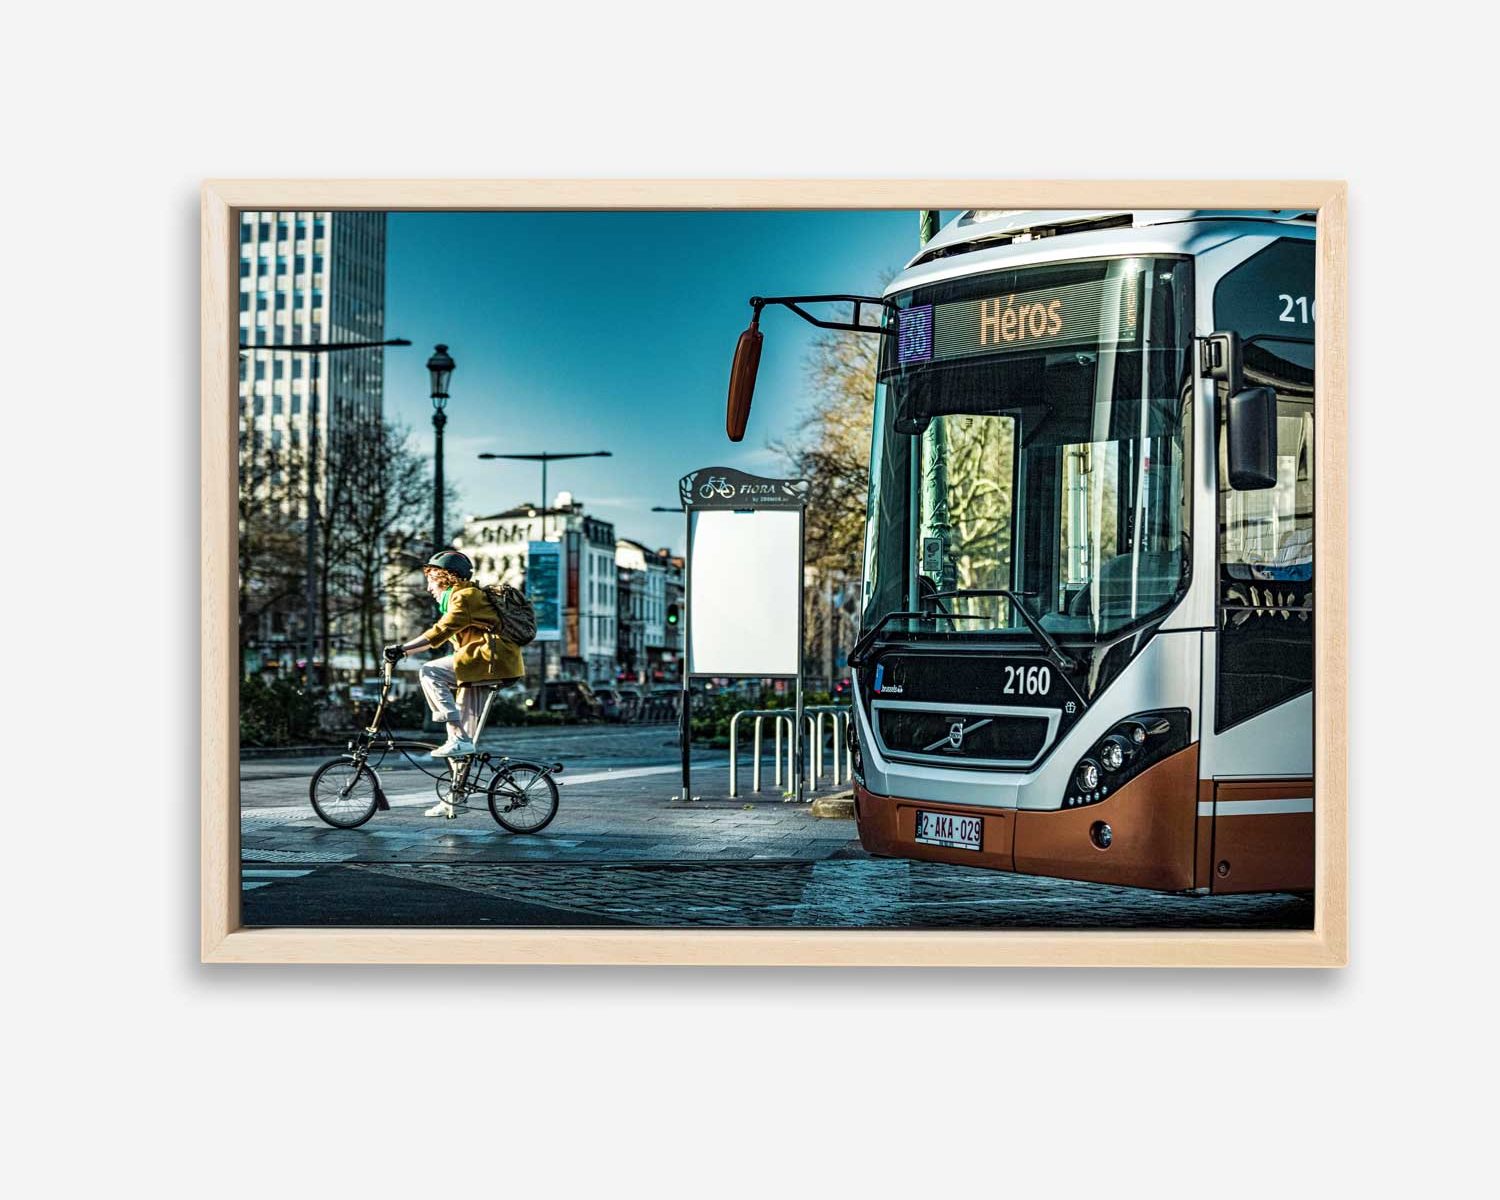 Cycliste et Bus de la Stib cohabitent sur une image intitulée Héros en rappel à la destination du bus